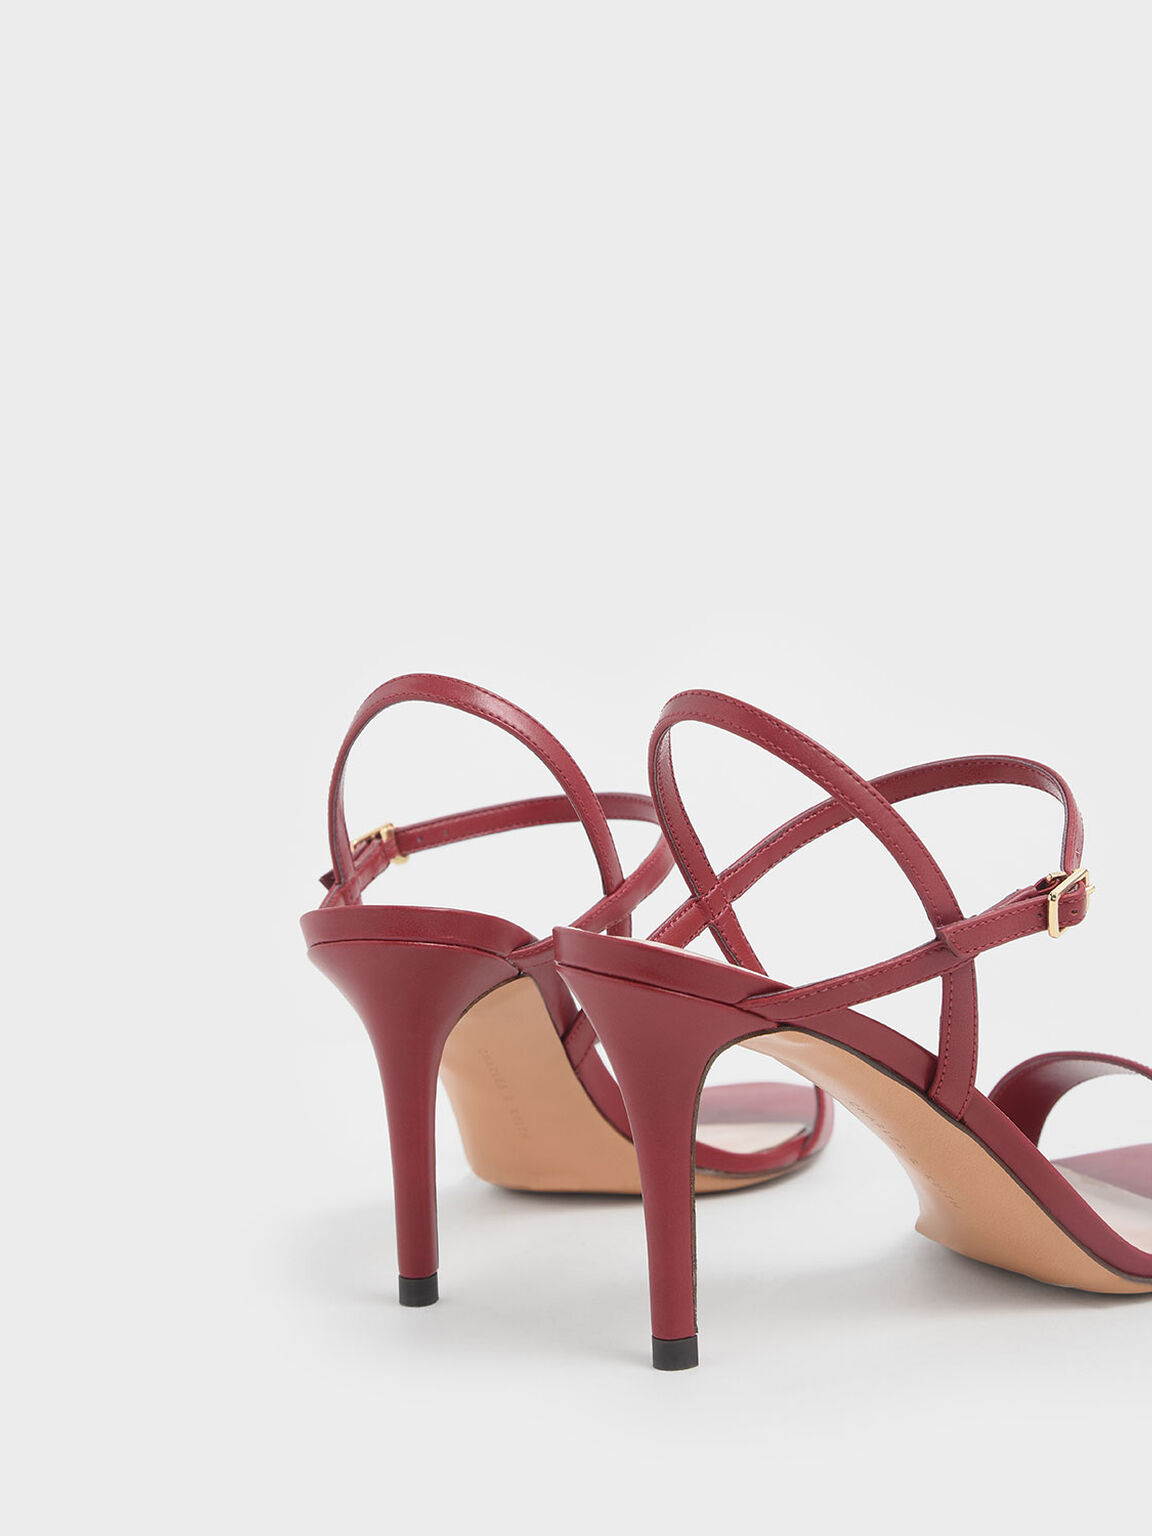 Classic Stiletto Heel Sandals, Red, hi-res